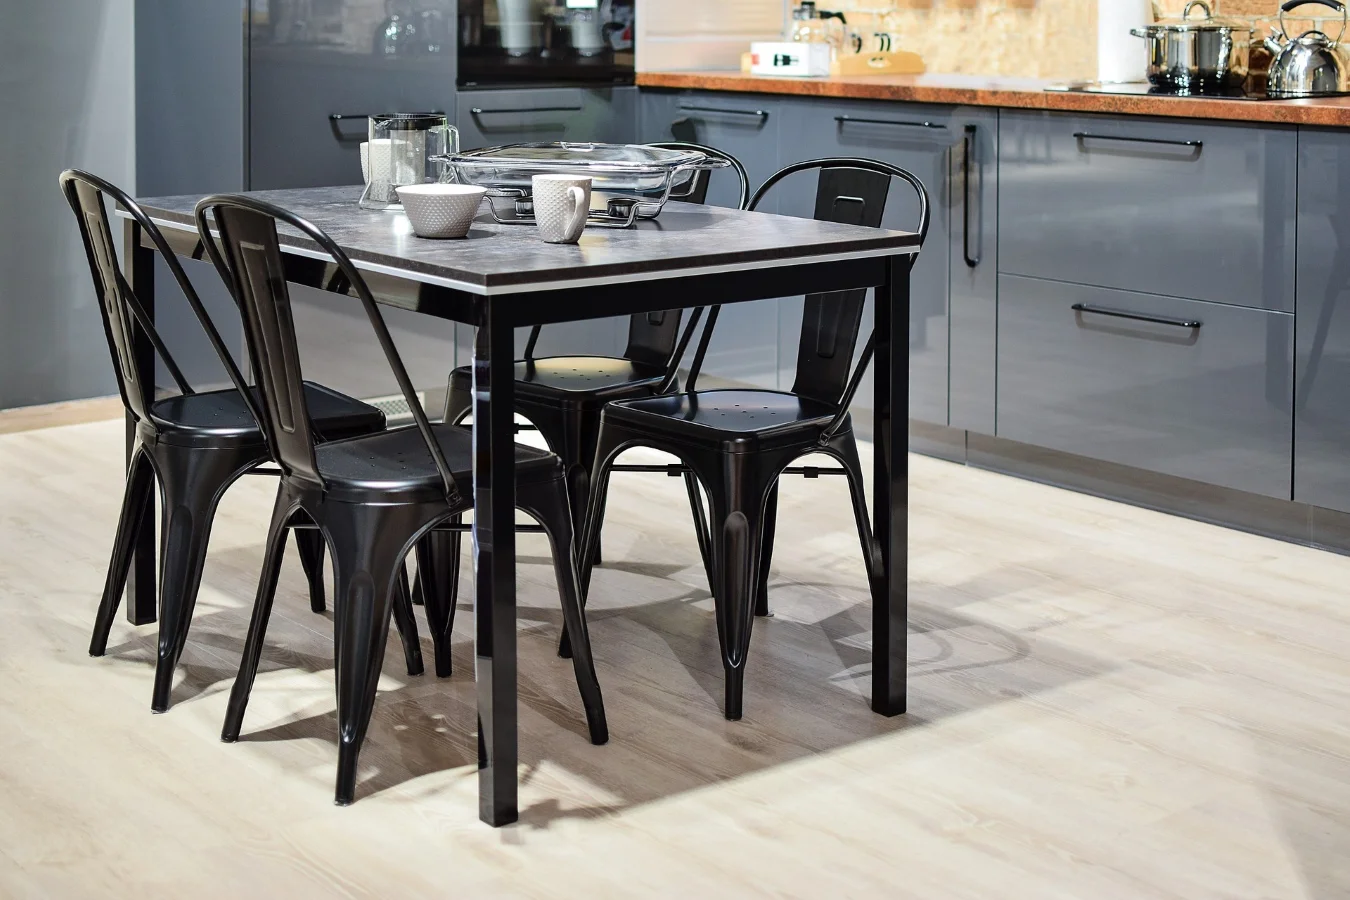 Metalowe czarne krzesła wprowadzają do kuchni nowoczesny akcent.